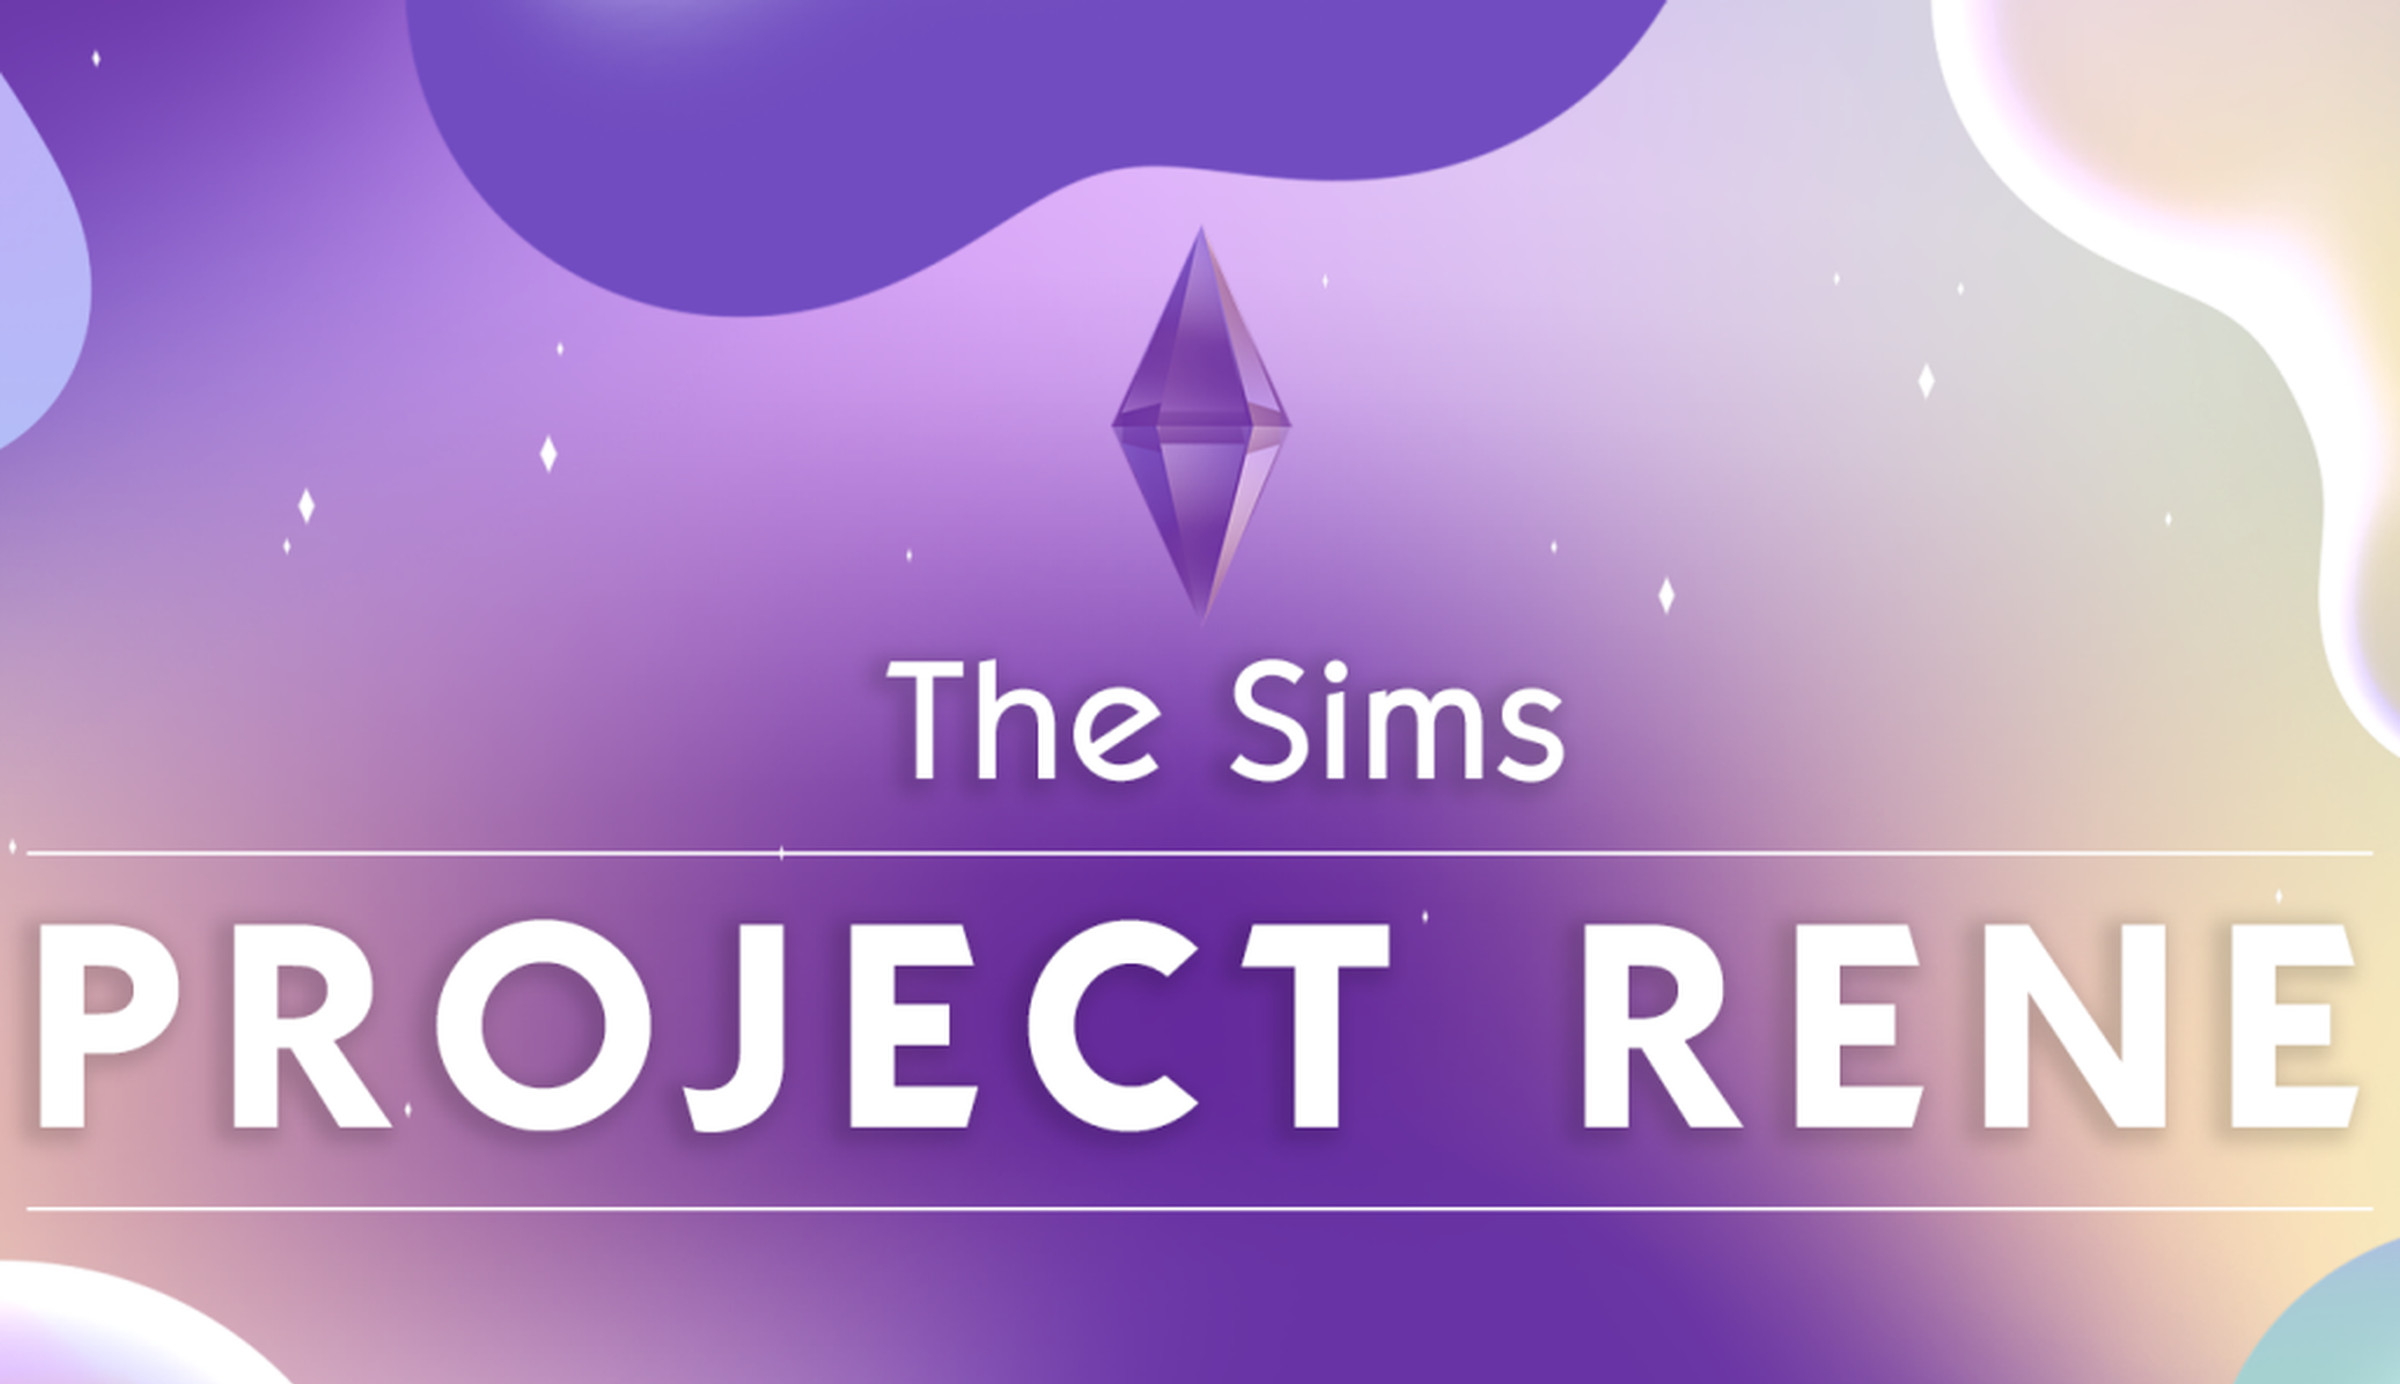 Похоже, новая часть The Sims будет условно-бесплатной игрой и выйдет на консолях: с сайта NEWXBOXONE.RU